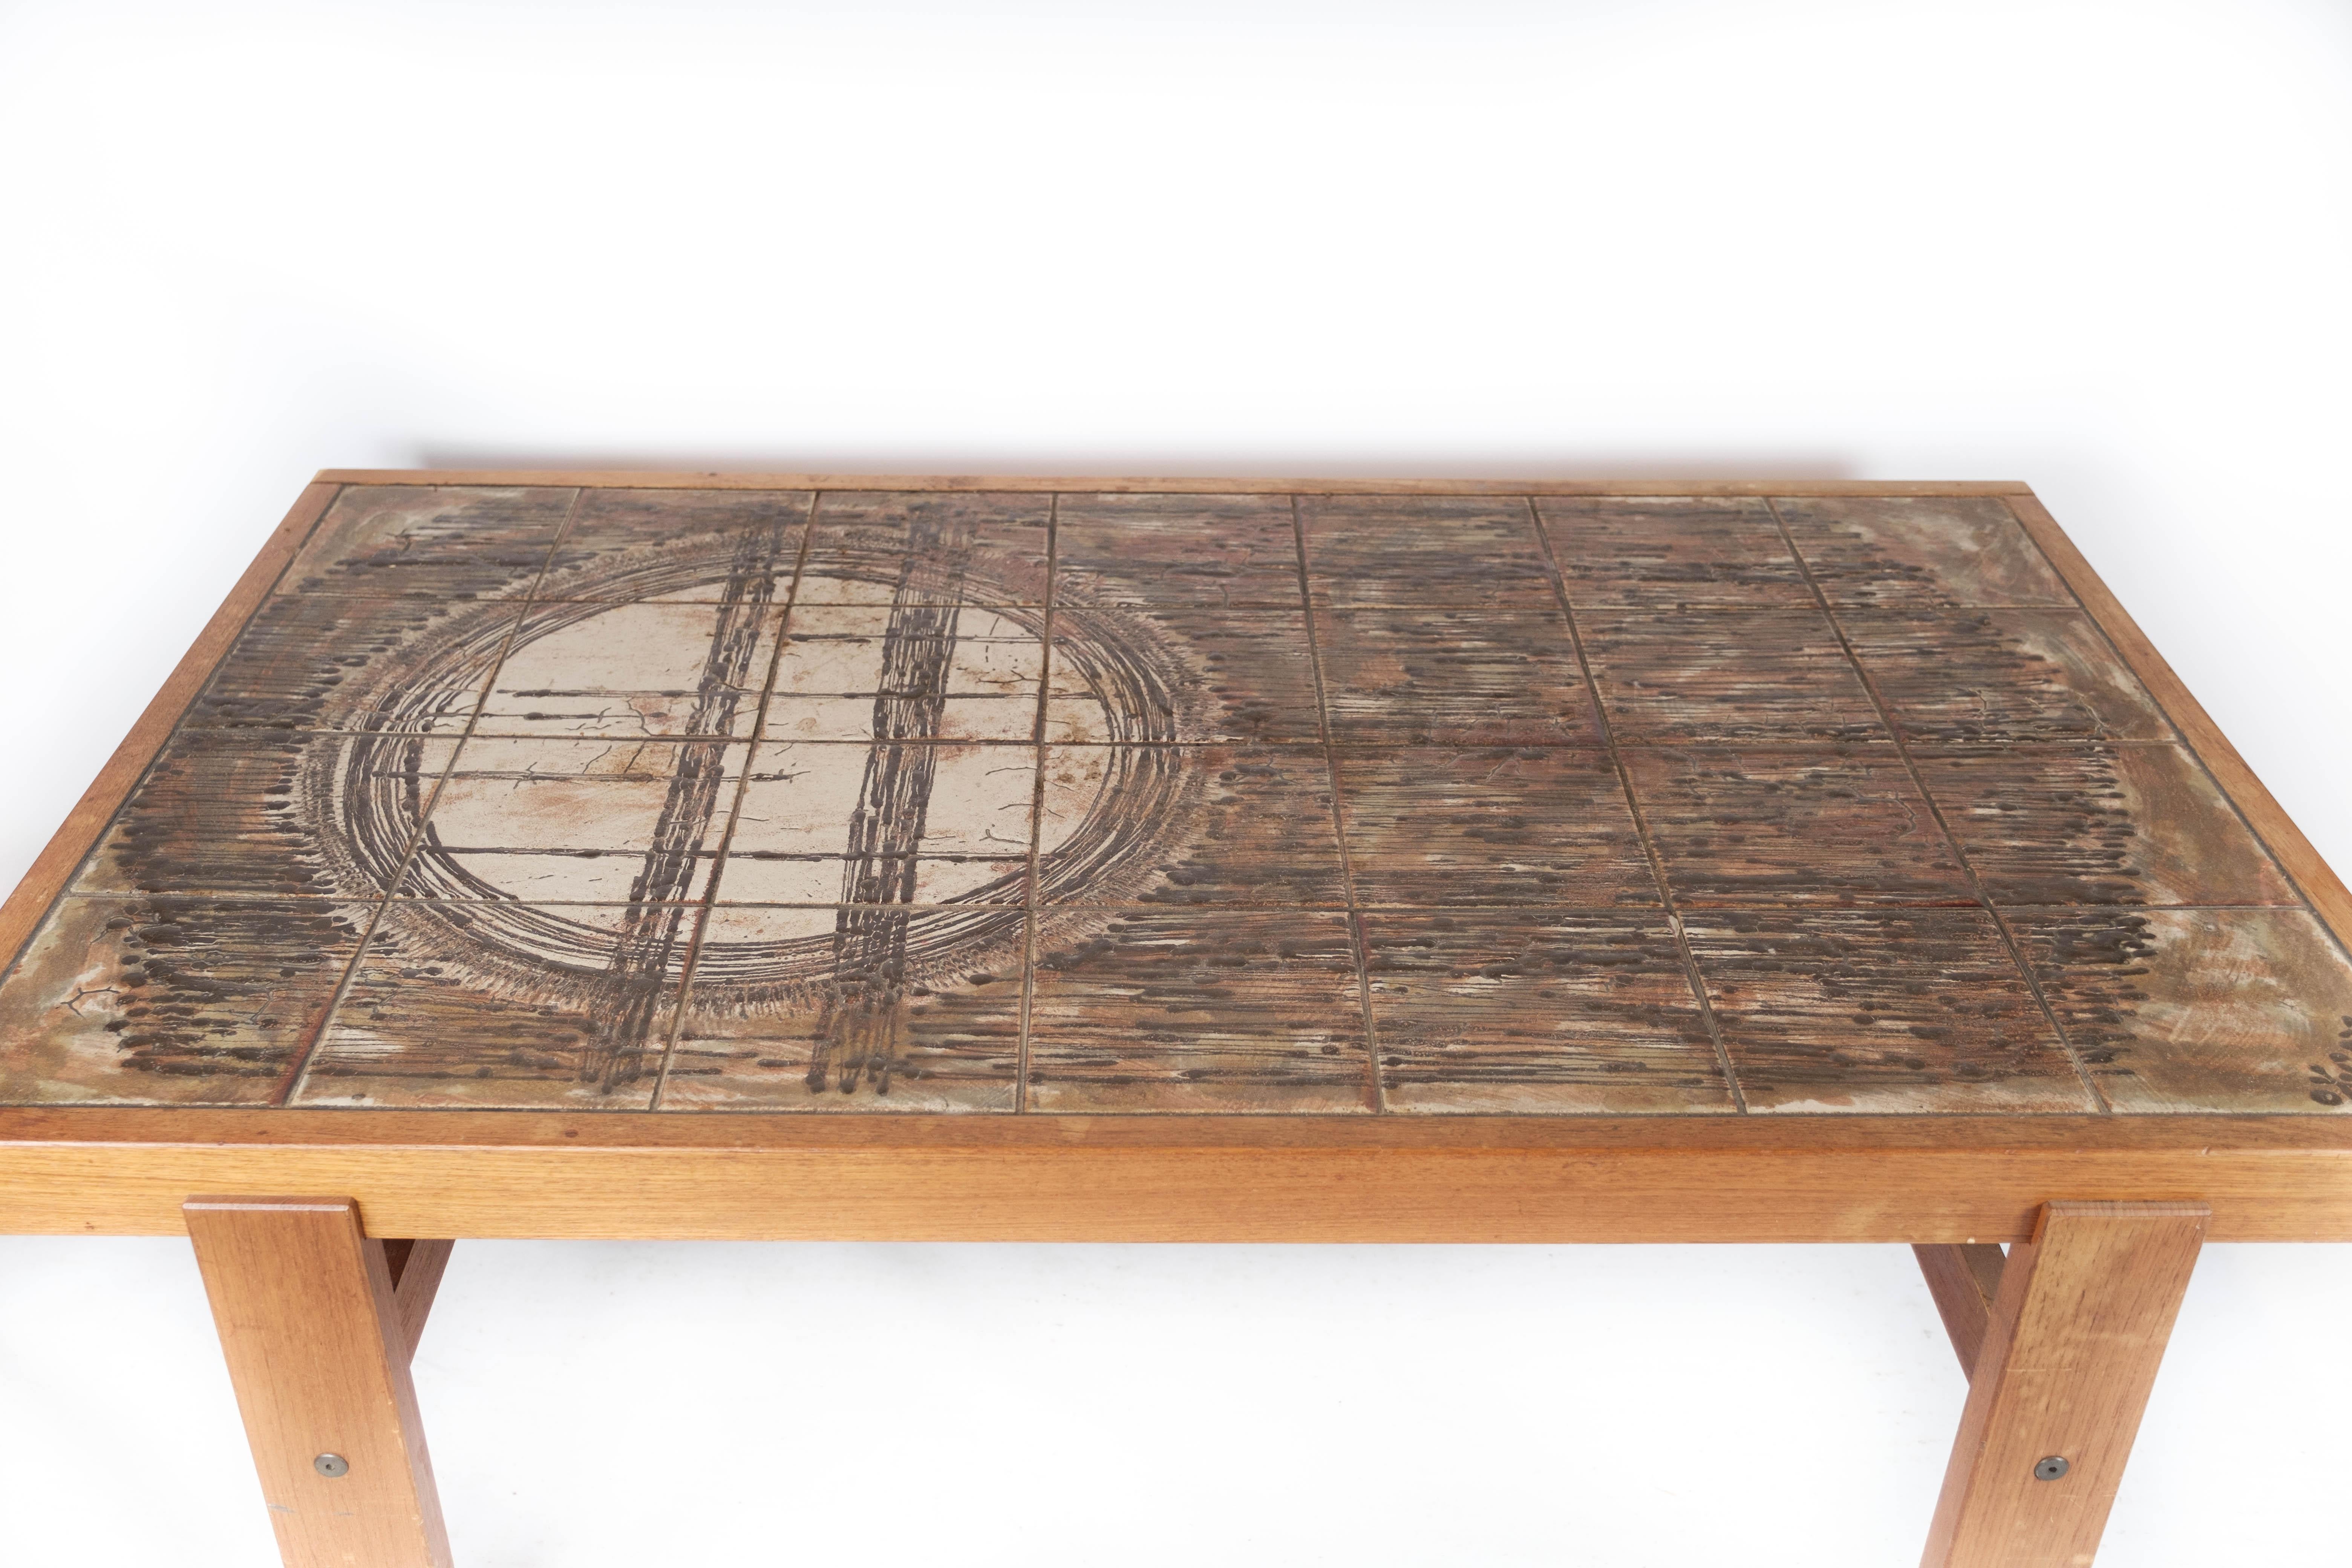 Fabriquée en bois de teck et ornée de charmants carreaux, cette table basse capture l'essence du design des années 1960. Ses lignes épurées et sa silhouette minimaliste incarnent l'esthétique danoise emblématique de l'époque, alliant fonctionnalité